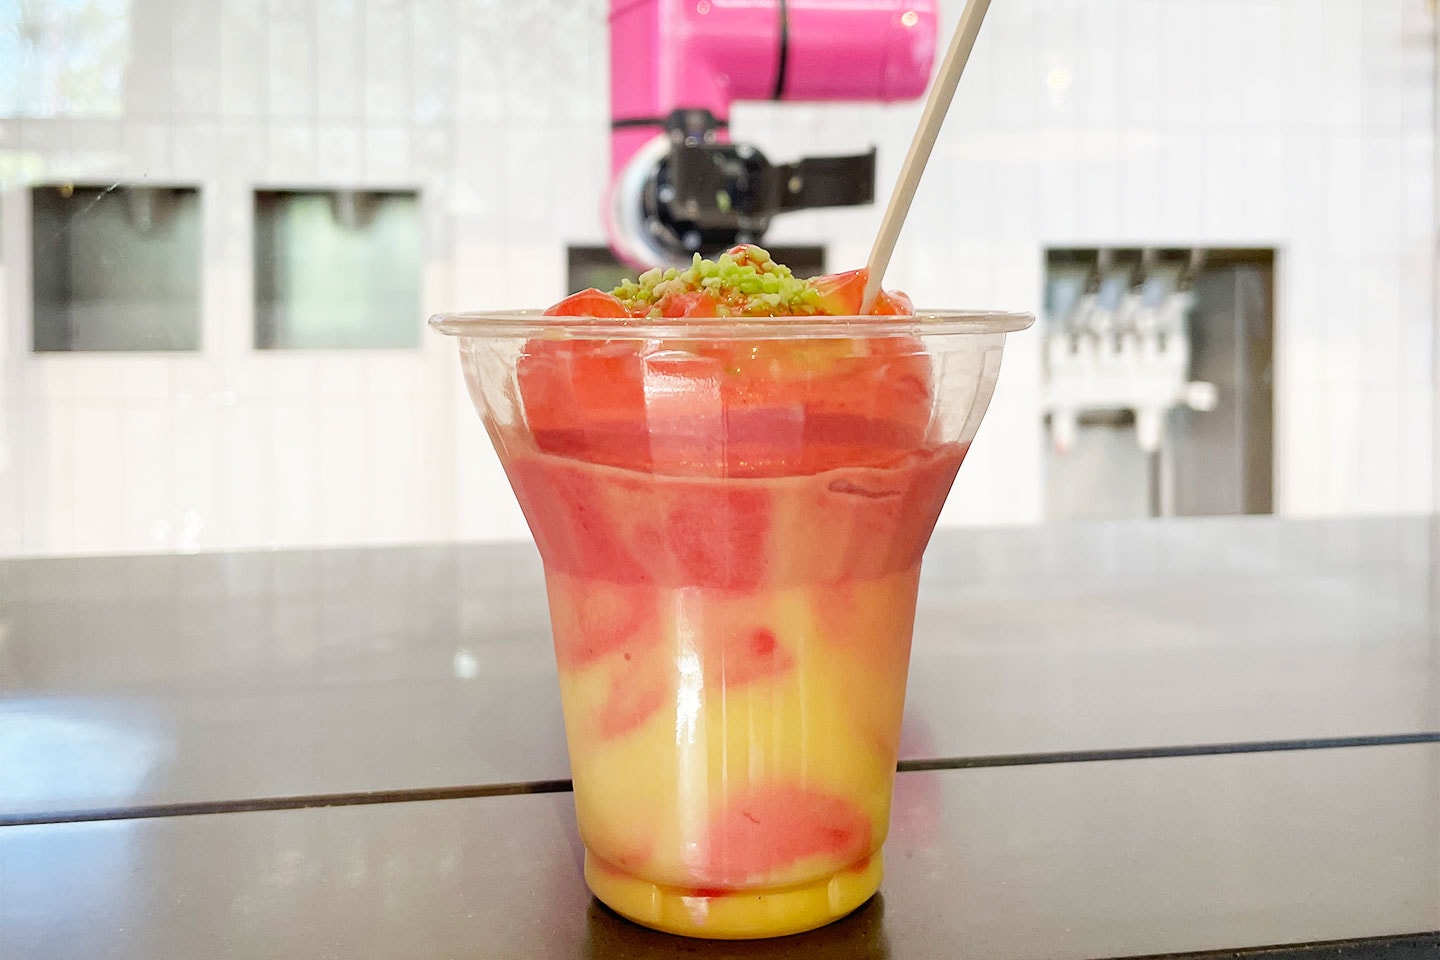 Skräddarsy din egen glass hos robotkafeét Bonbot på Sturegatan (6 av 14) (7 av 14)